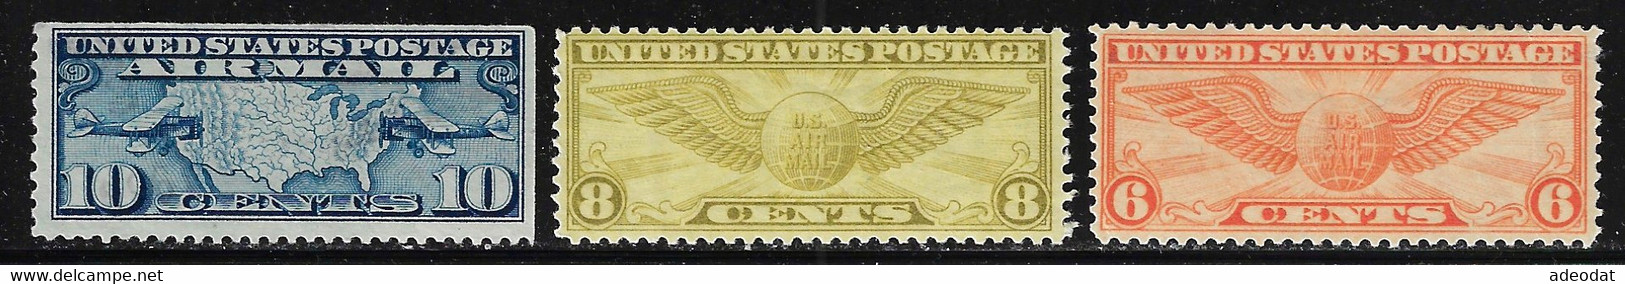 UNITED STATES 1926, 1932, 1934 SCOTT C7, C17, C19 MH - 1b. 1918-1940 Unused